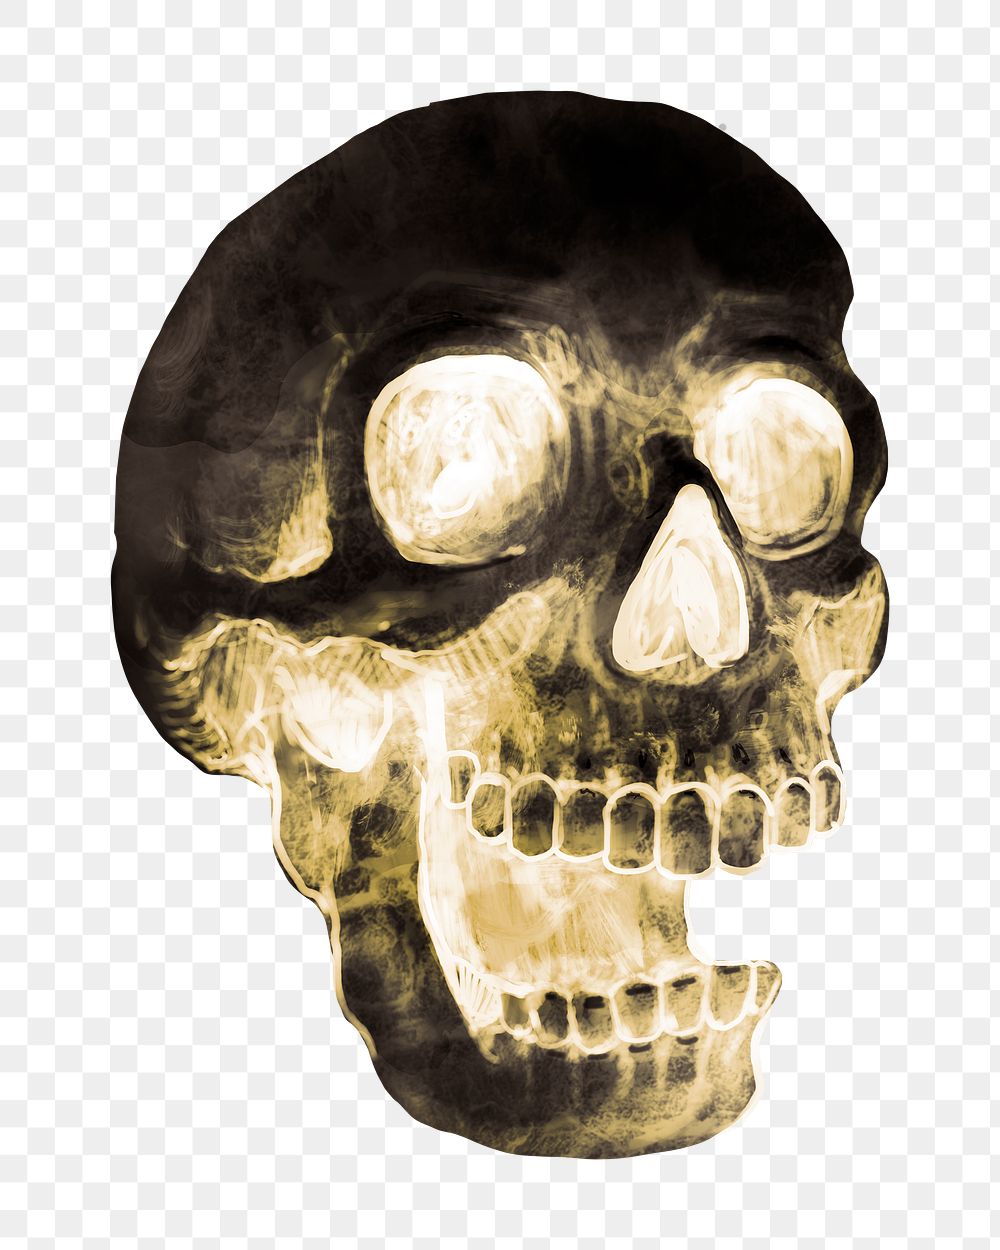 Skull png illustration, transparent background